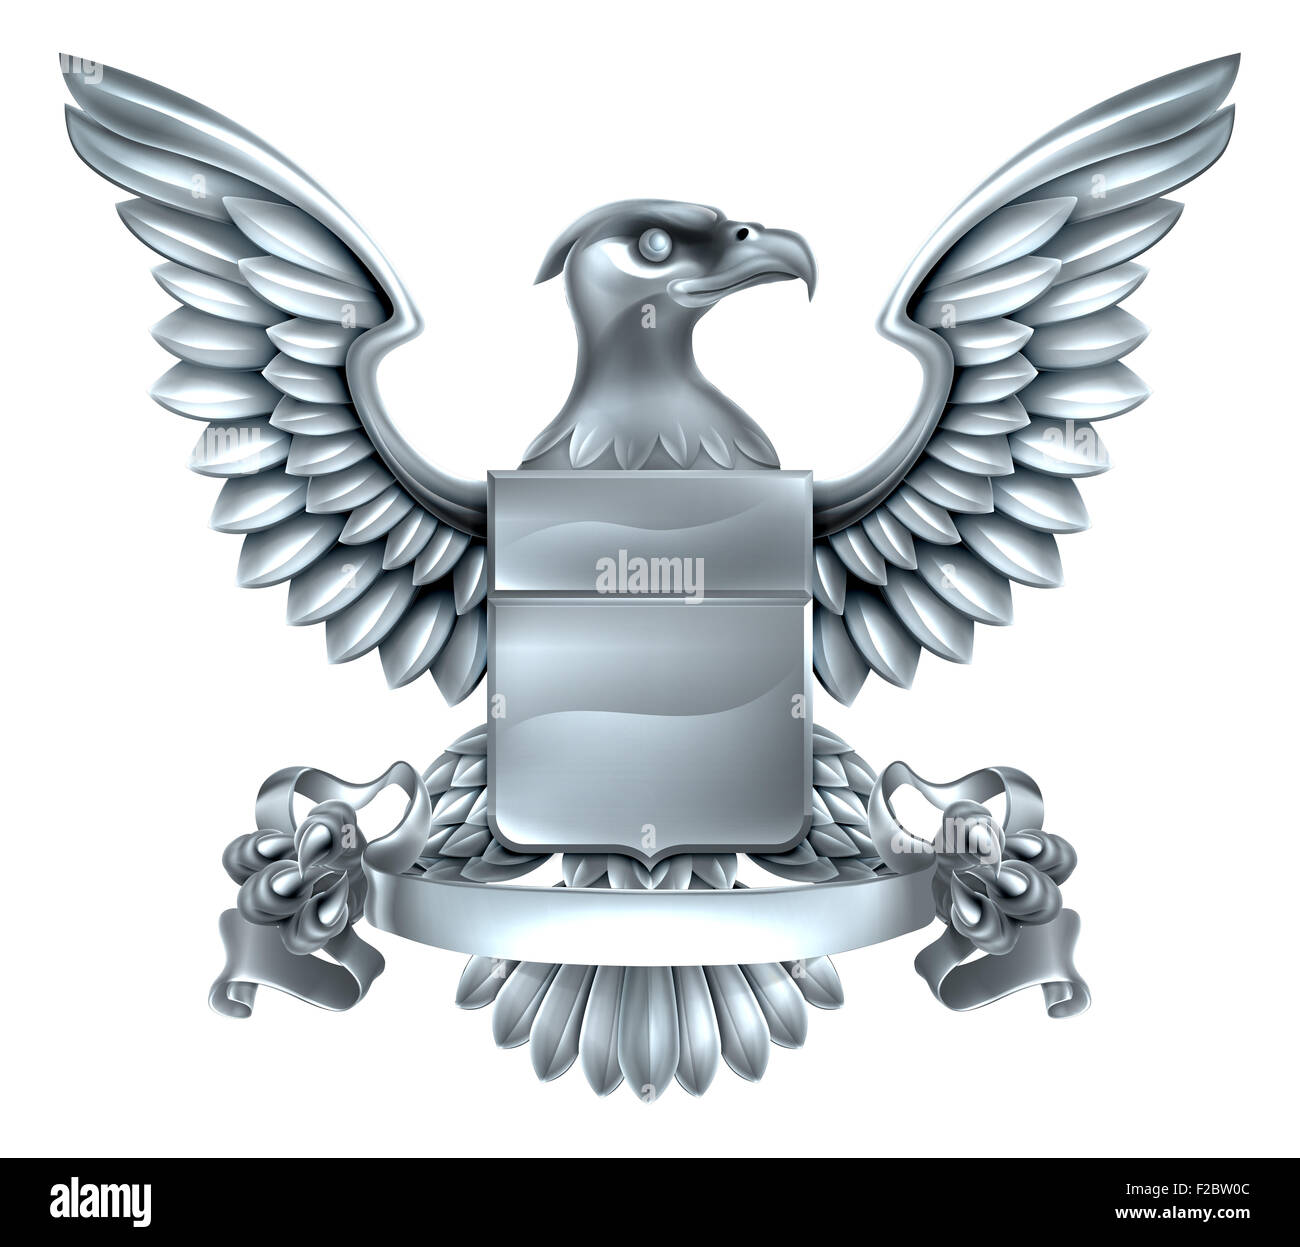 Un aigle héraldique héraldique bouclier métallique argent armoiries design avec une bannière défiler. Banque D'Images